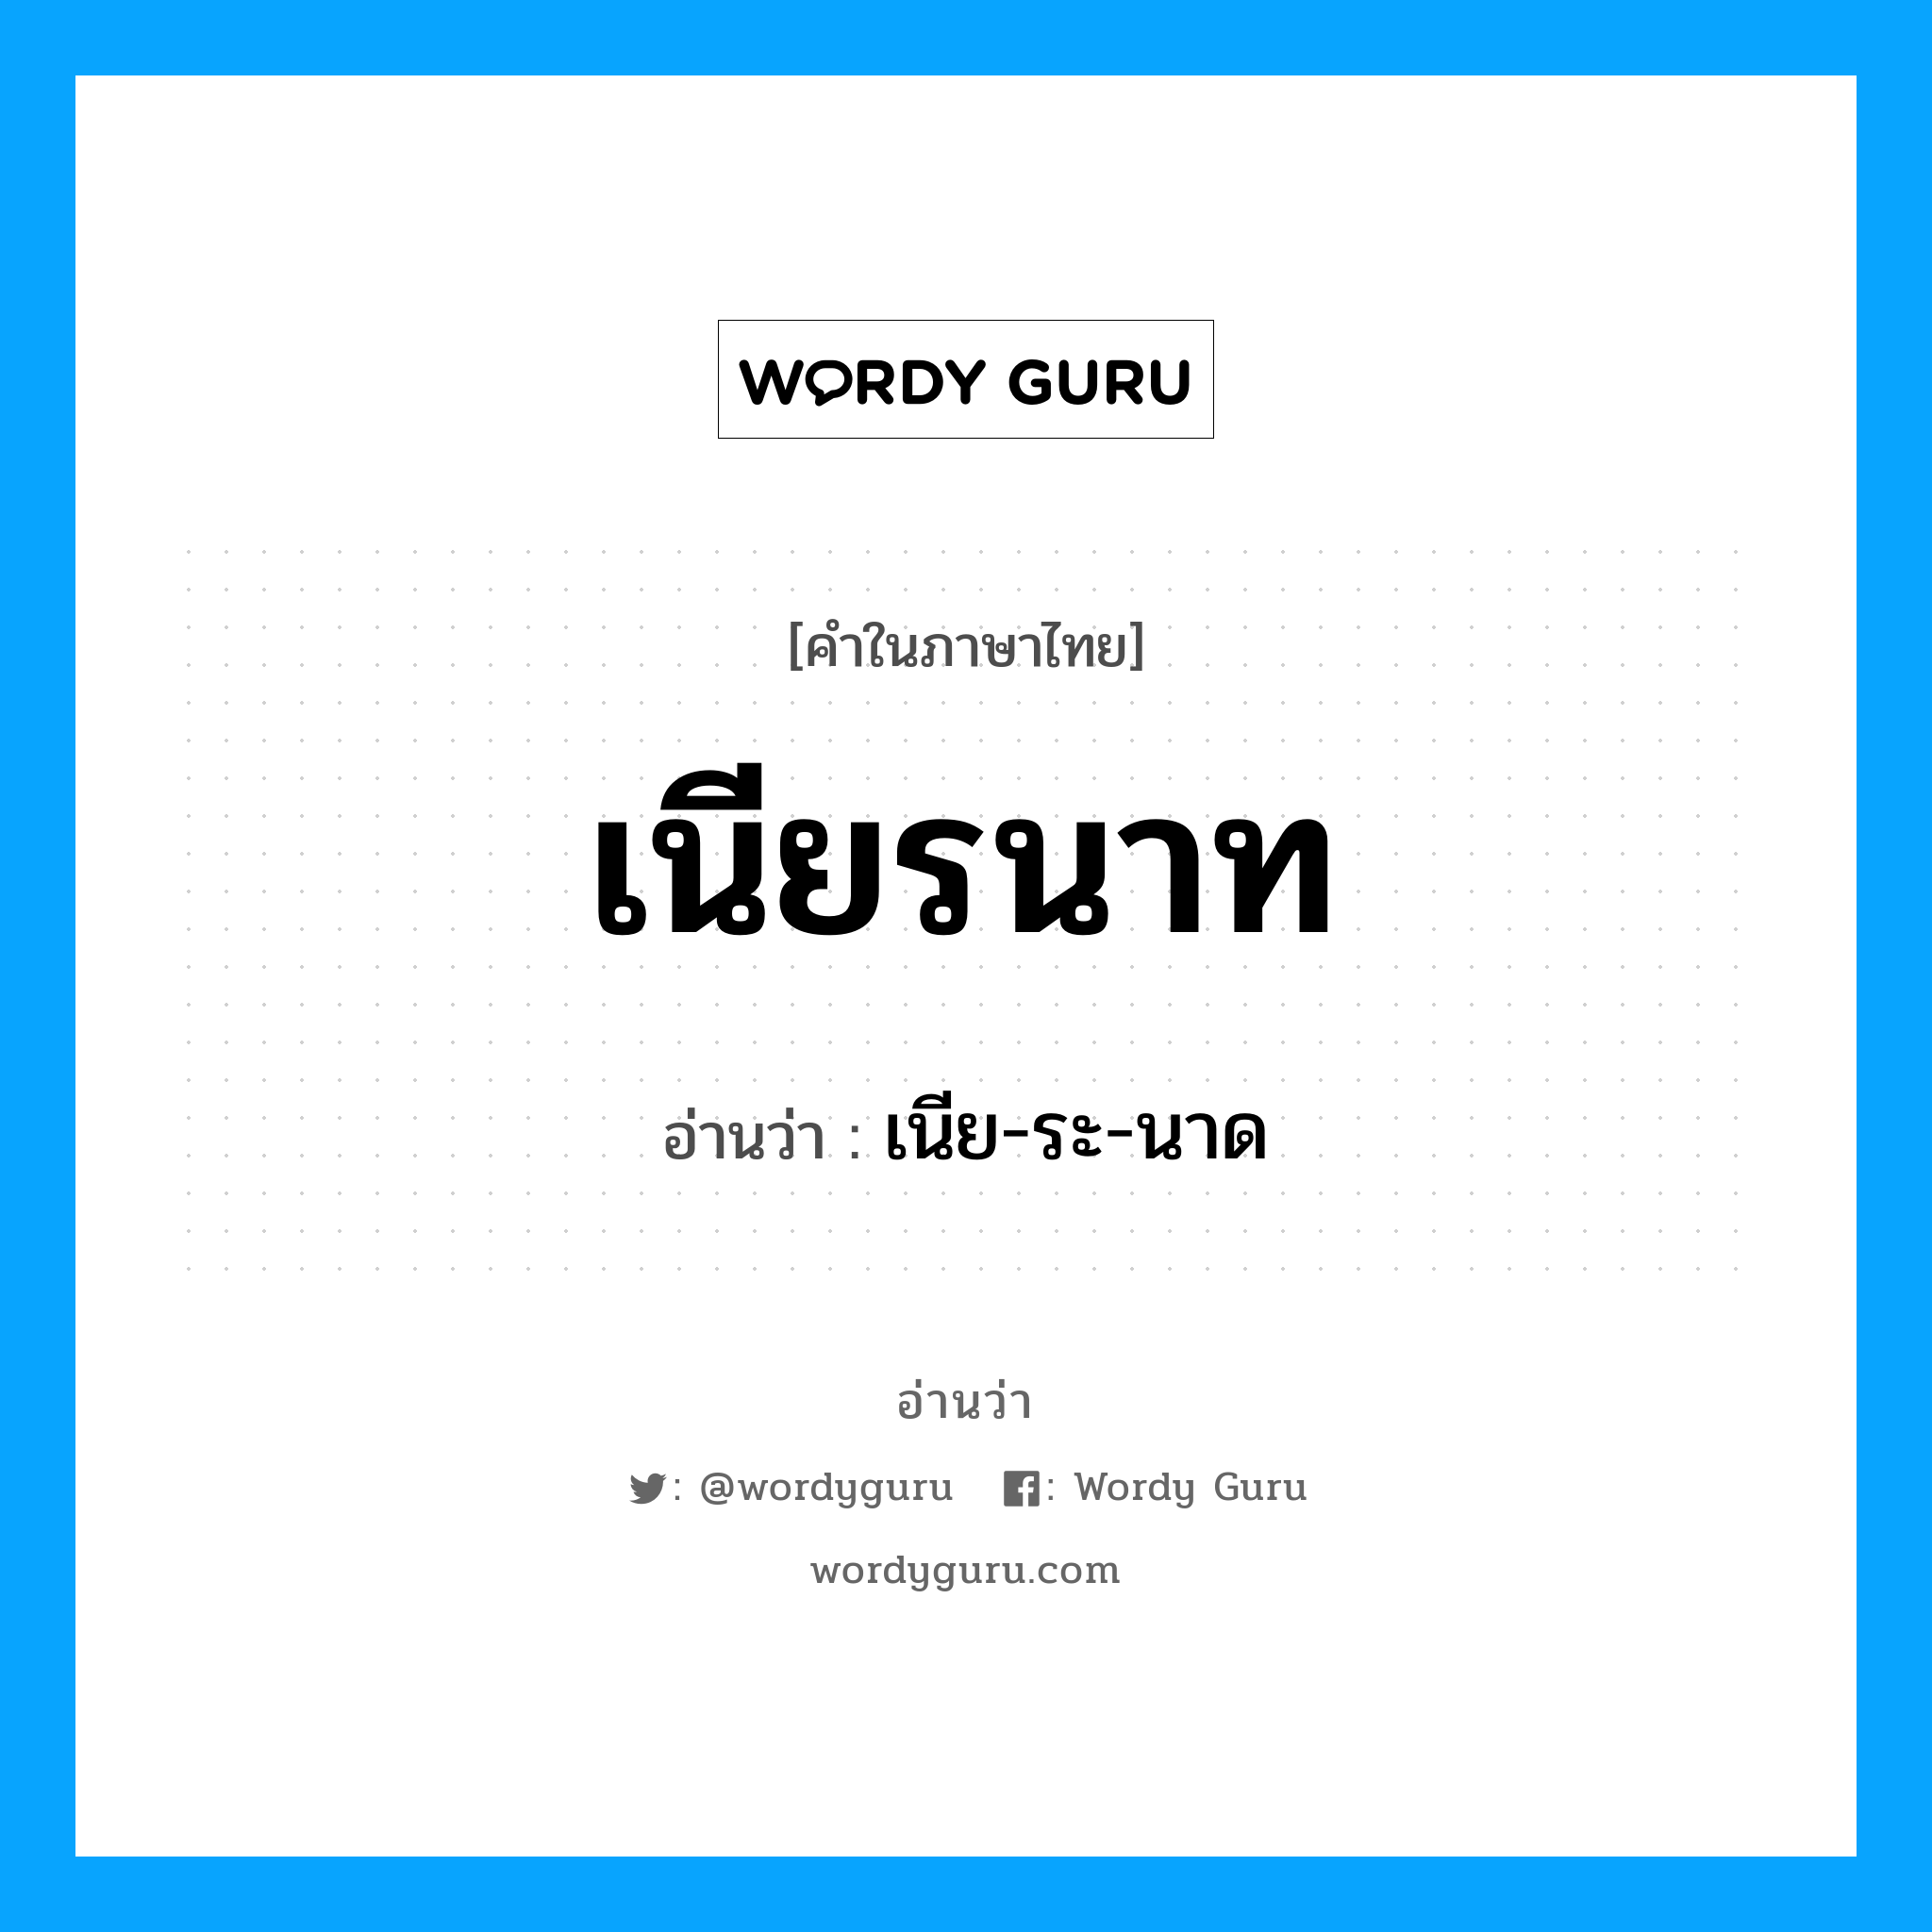 เนีย-ระ-นาด เป็นคำอ่านของคำไหน?, คำในภาษาไทย เนีย-ระ-นาด อ่านว่า เนียรนาท